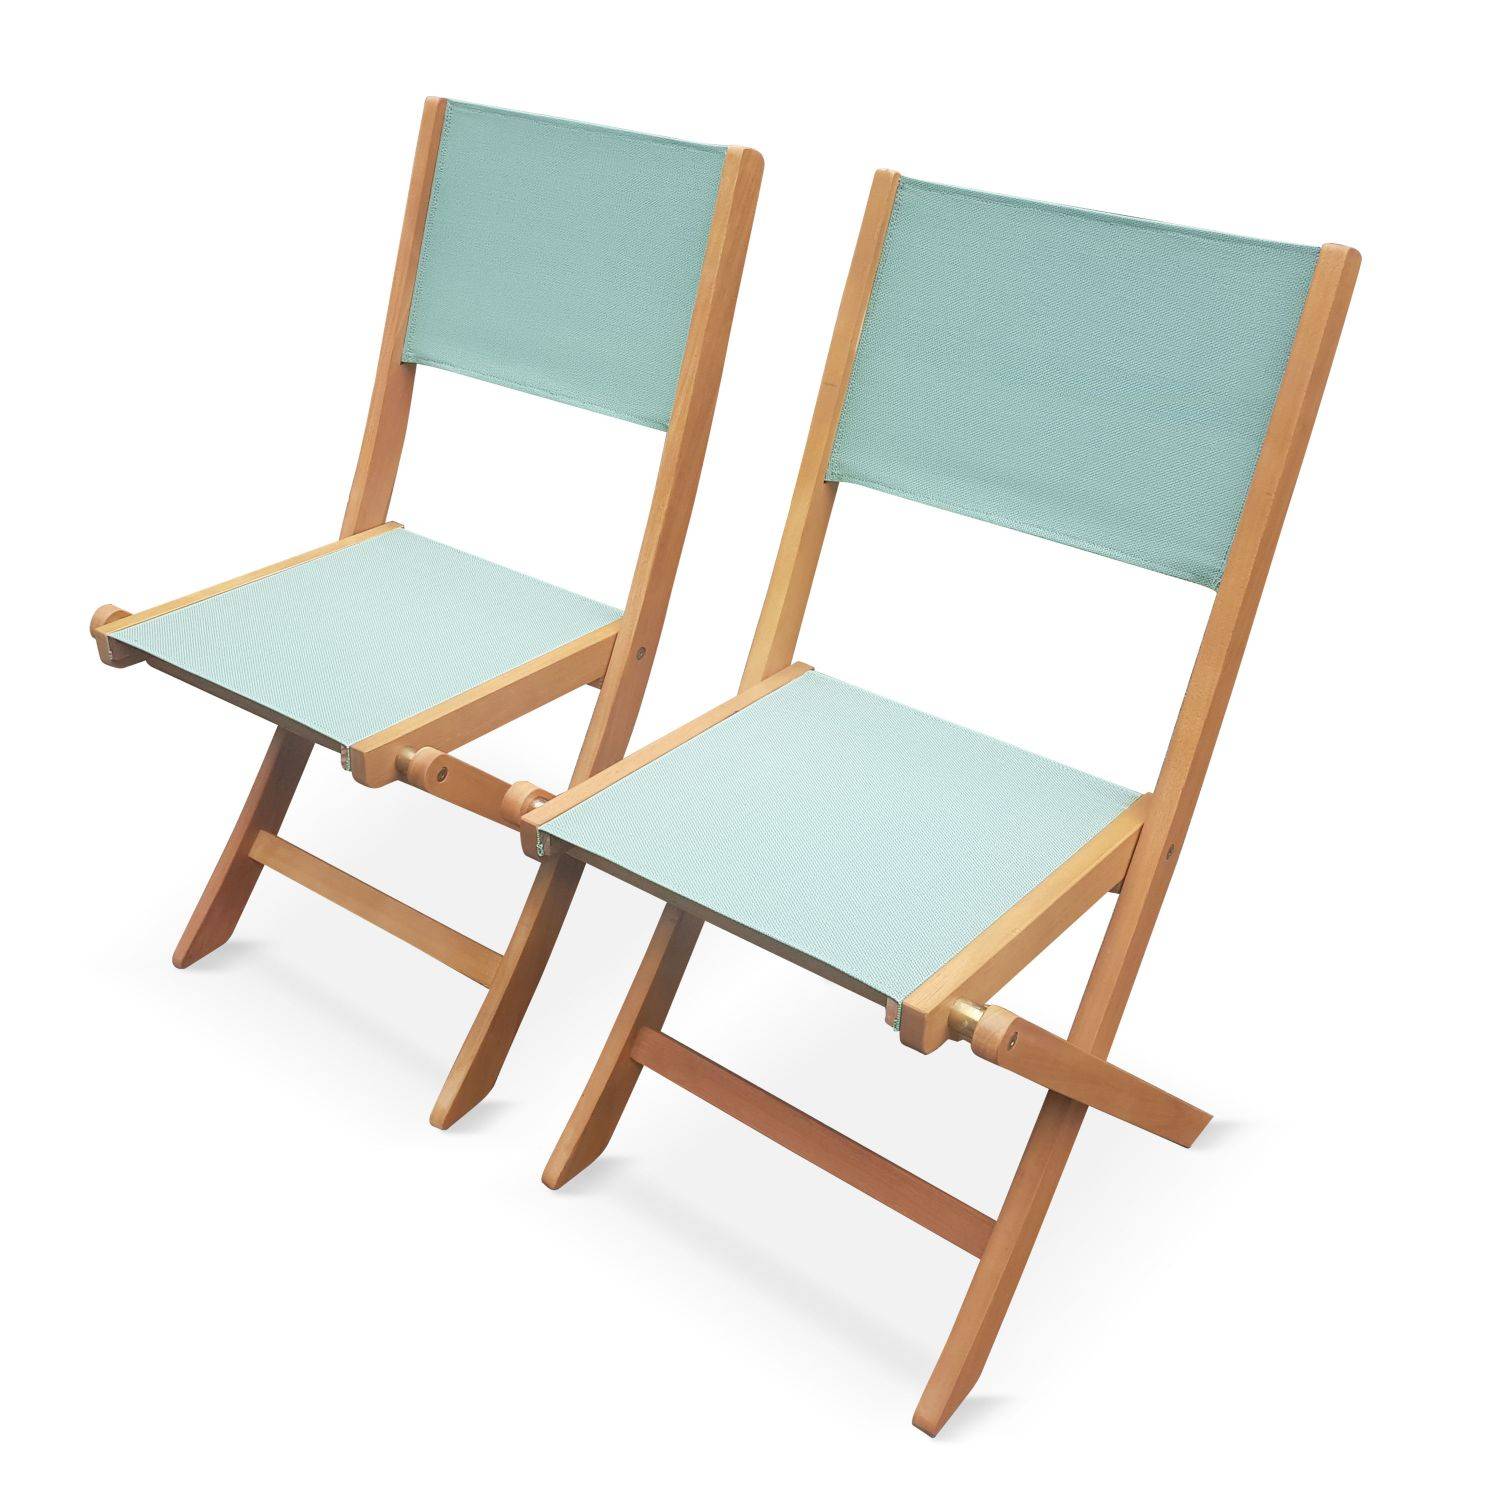 Gartenstühle aus Holz und Textilene - Almeria graugrün - 2 Klappstühle aus geöltem FSC Eukalyptusholz und Textilene Photo1